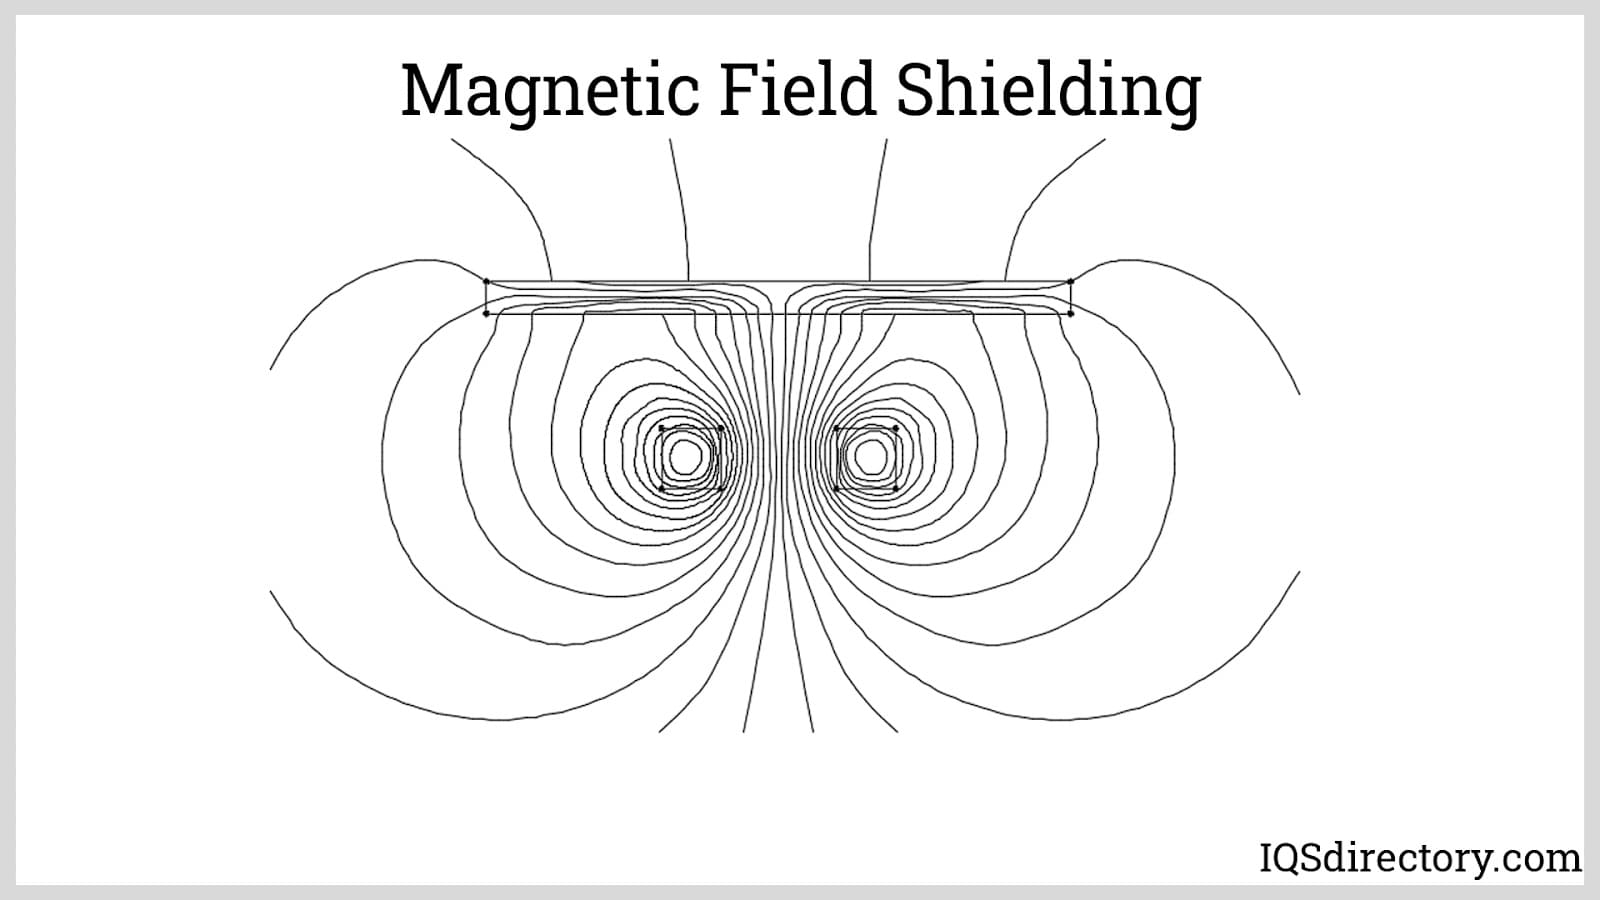 Magnetic Field Shielding